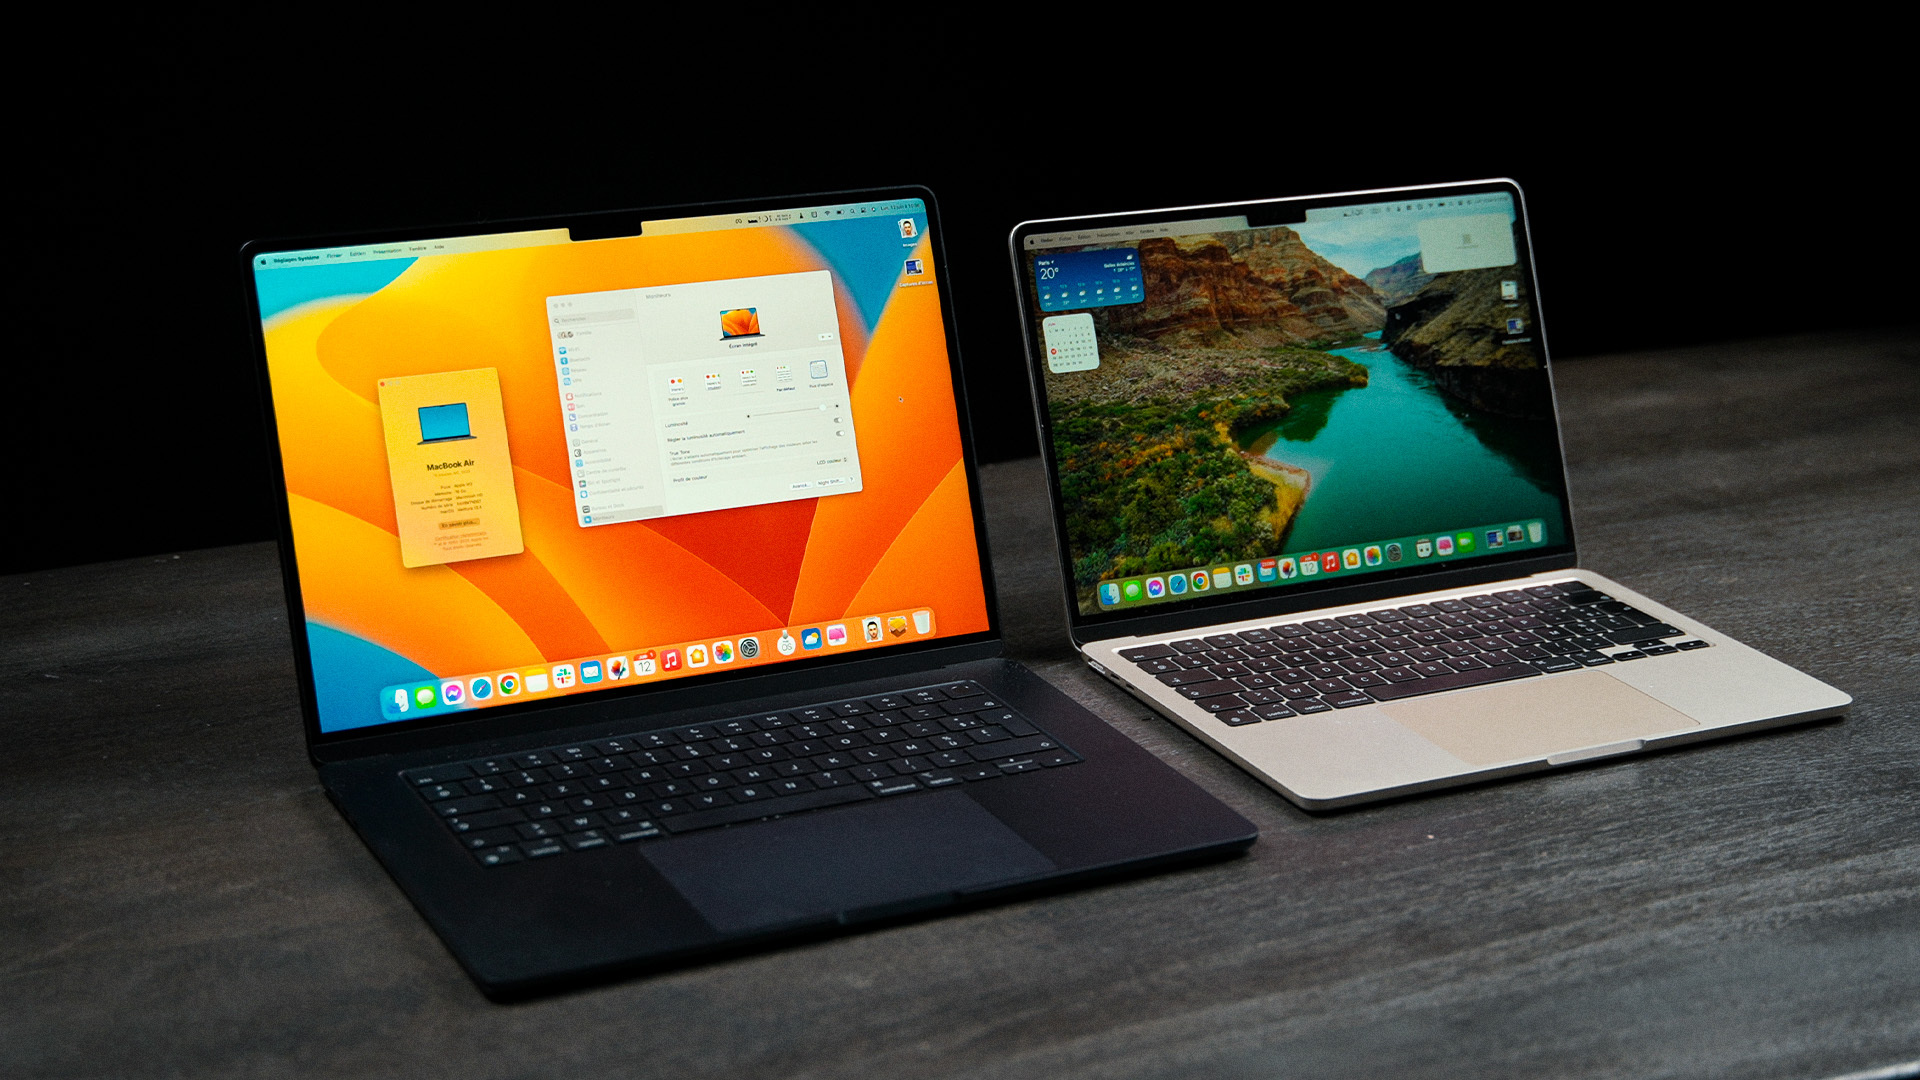 Trouver un MacBook Pro M1 neuf et pas cher ? C'est possible avec cette  astuce